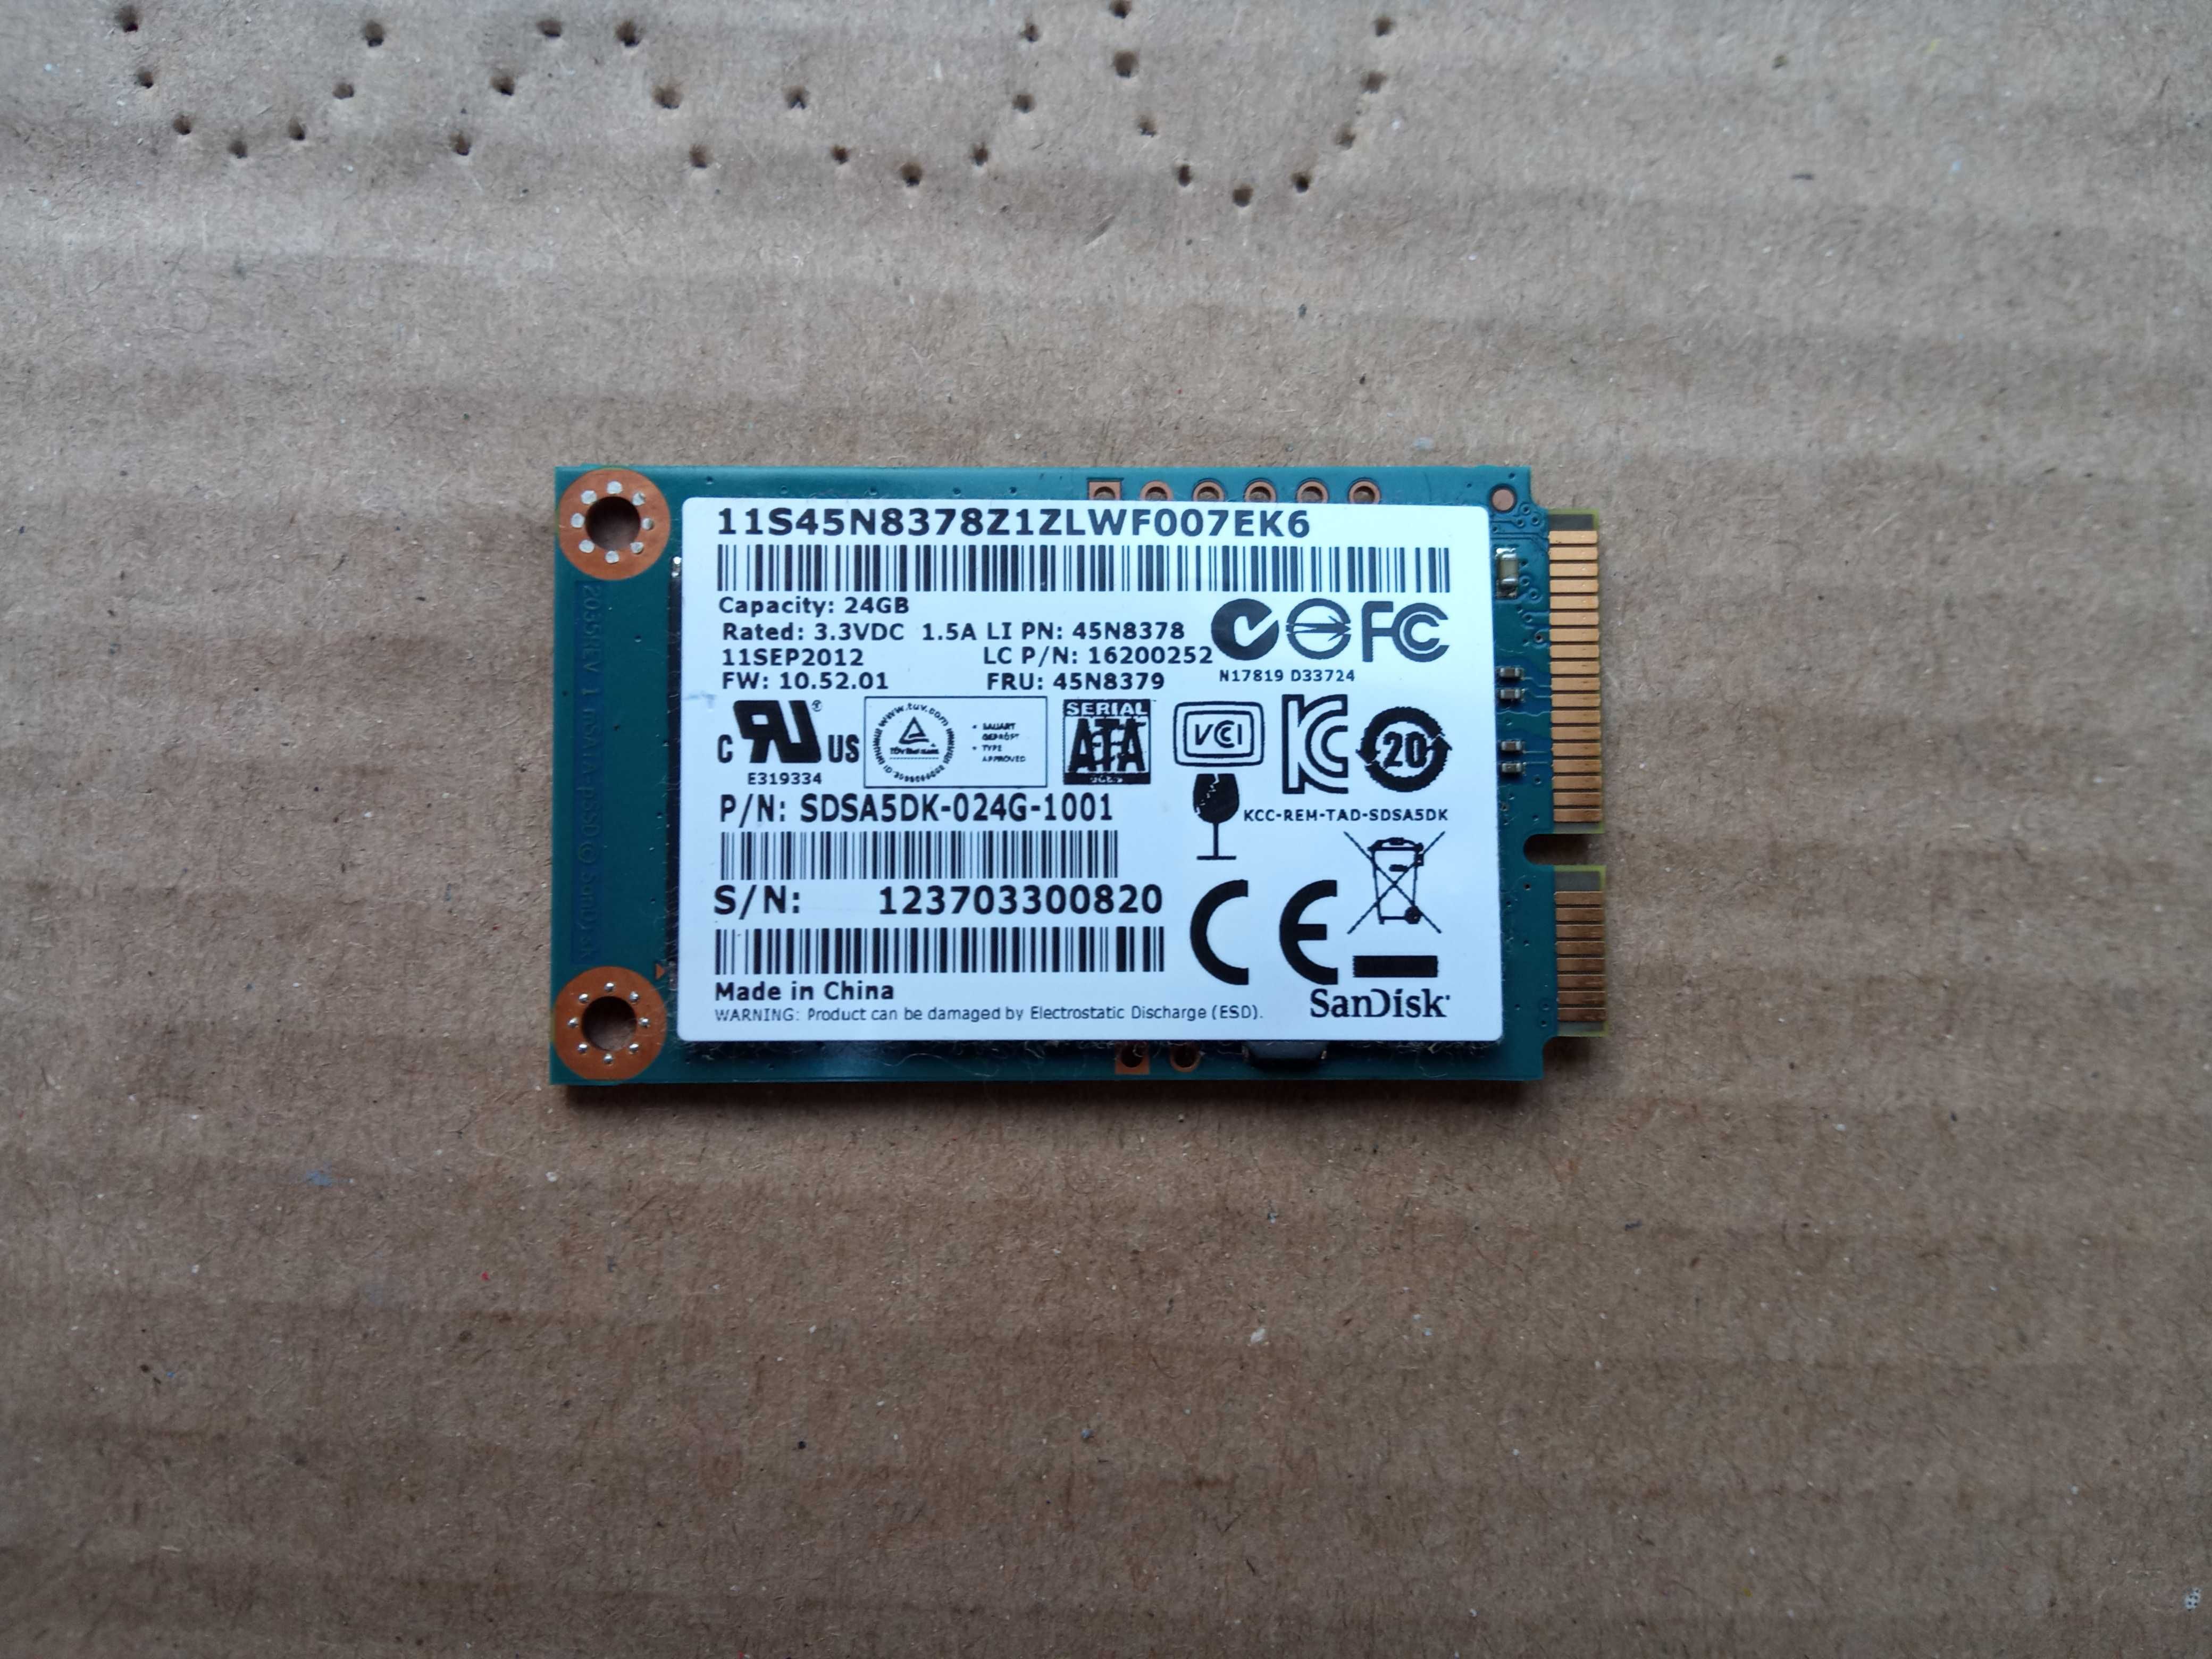 Lenovo IdeaPad U410, U310 Touch SanDisk 24gb SSD 45N8378